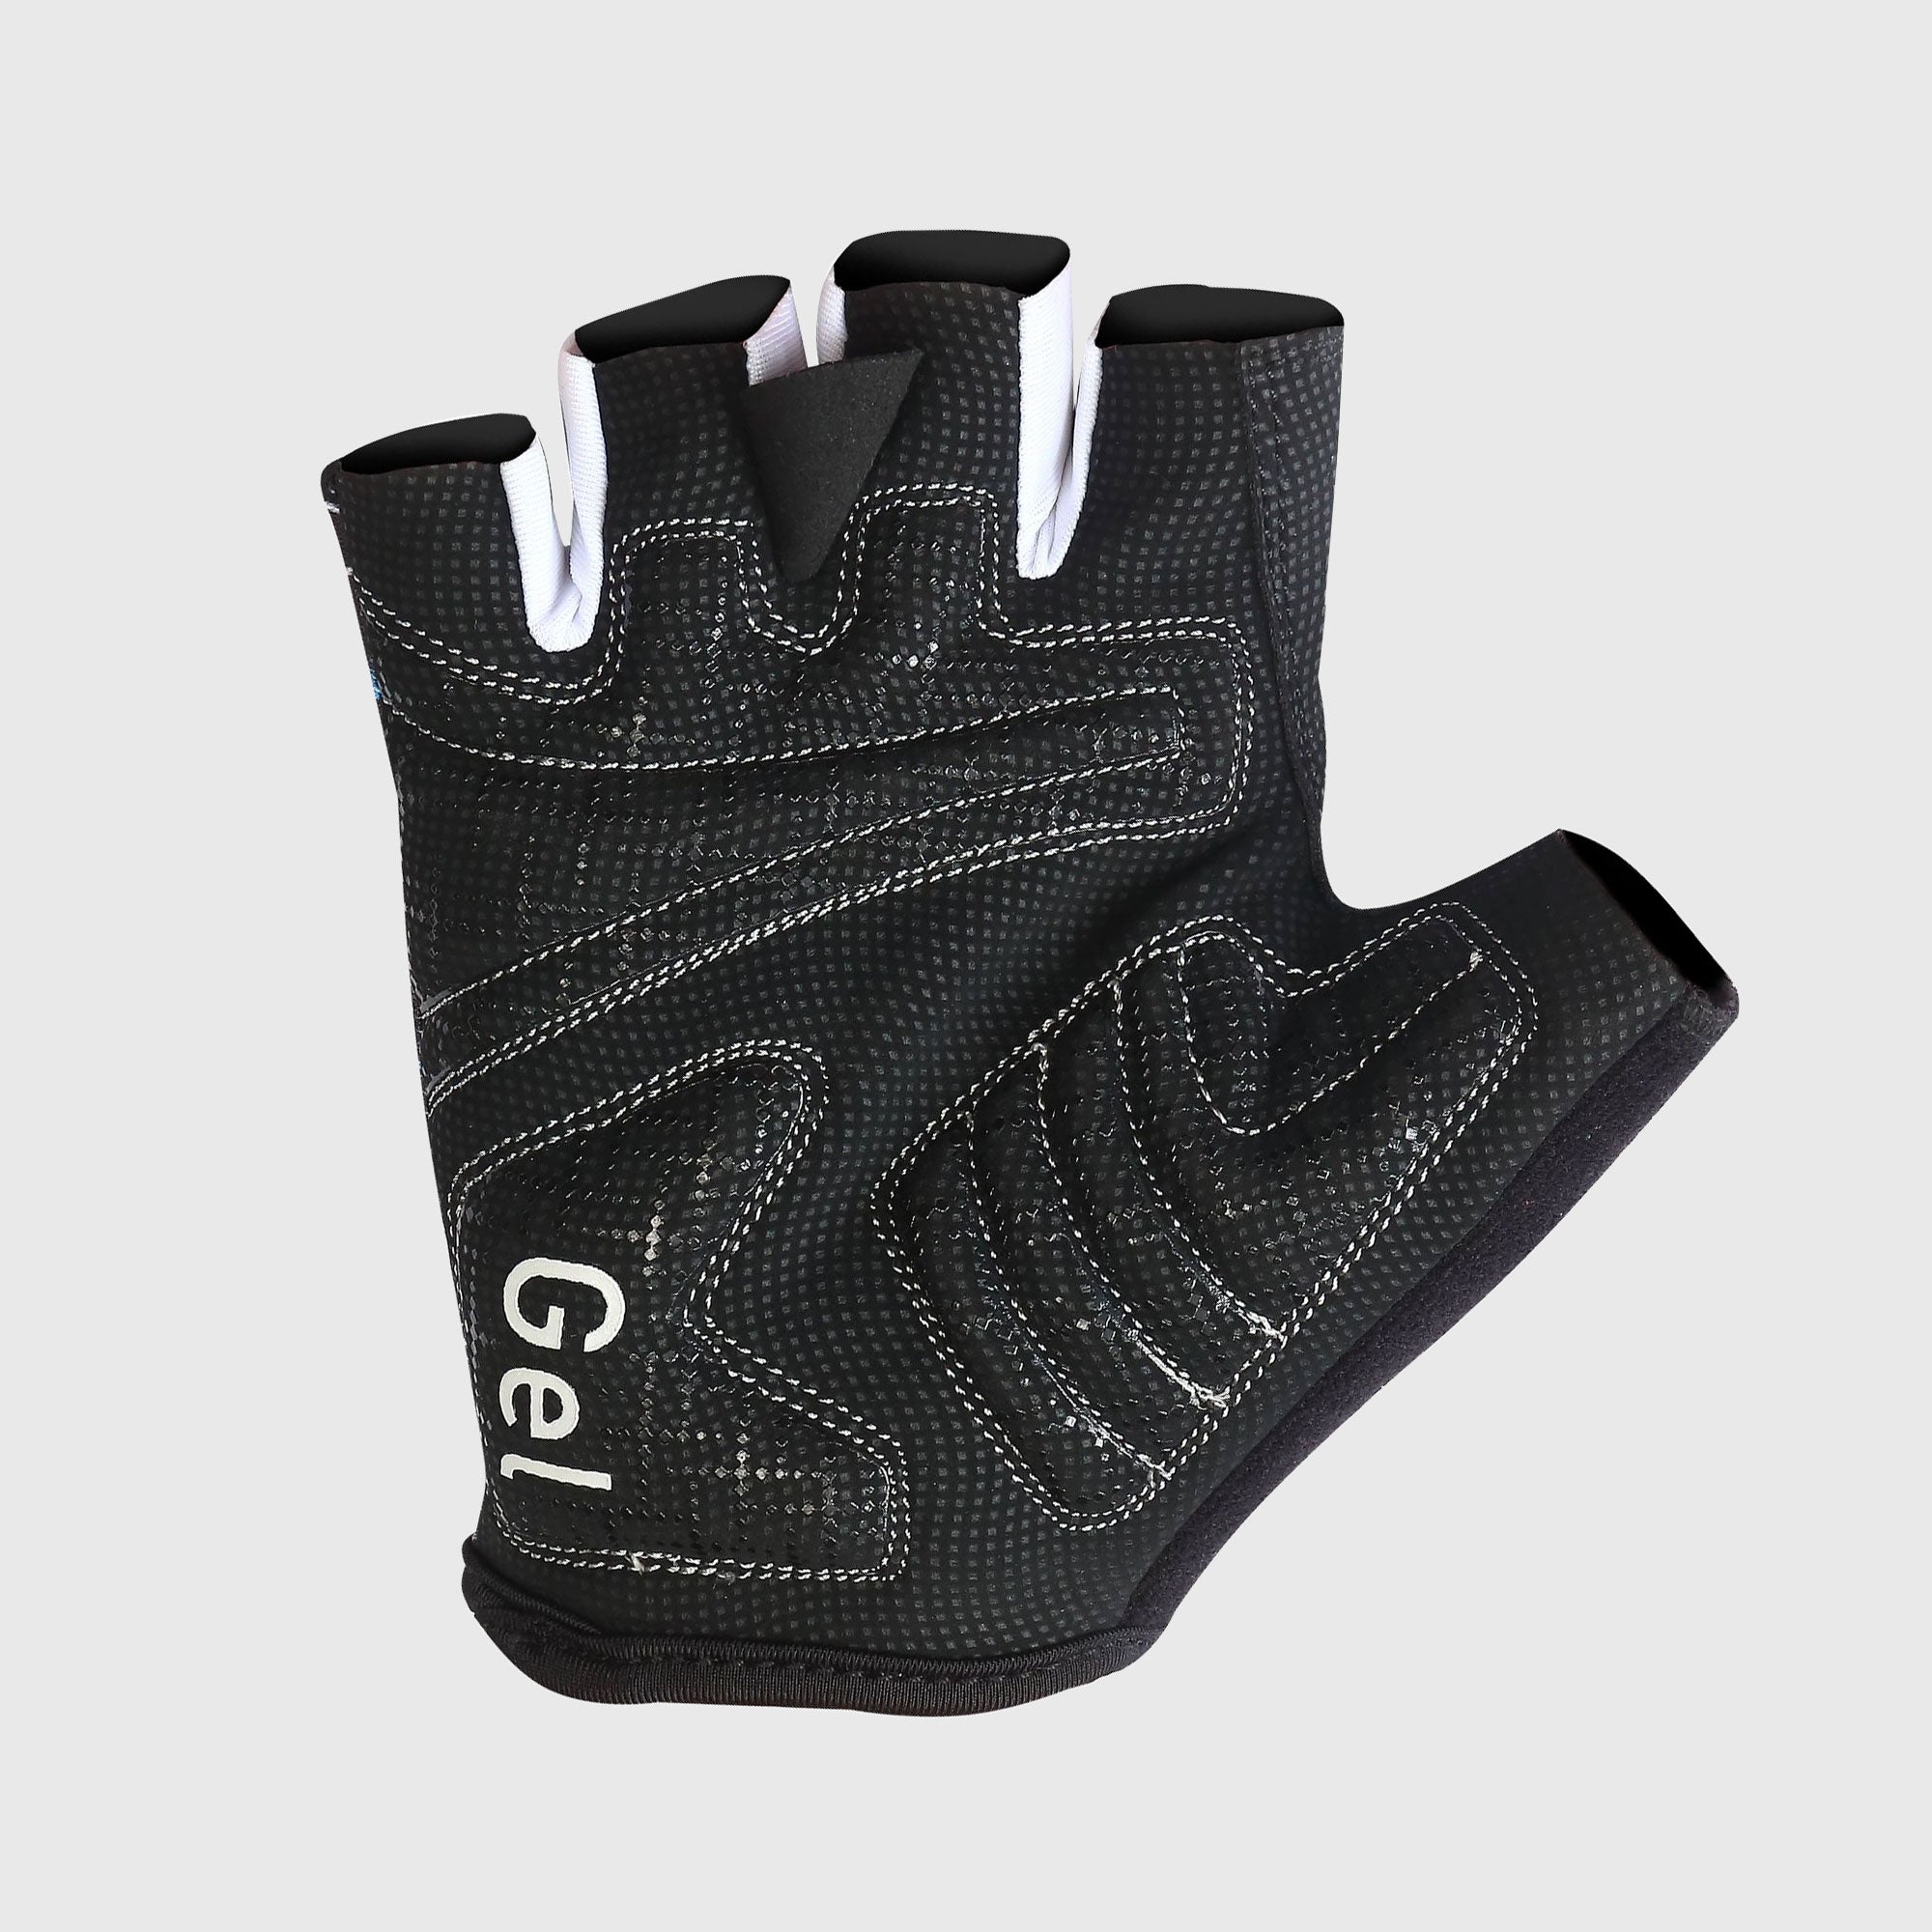 Fdx Black Short Finger Cycling Gloves for Summer MTB Road Bike fingerless, anti slip & Breathable - Vega